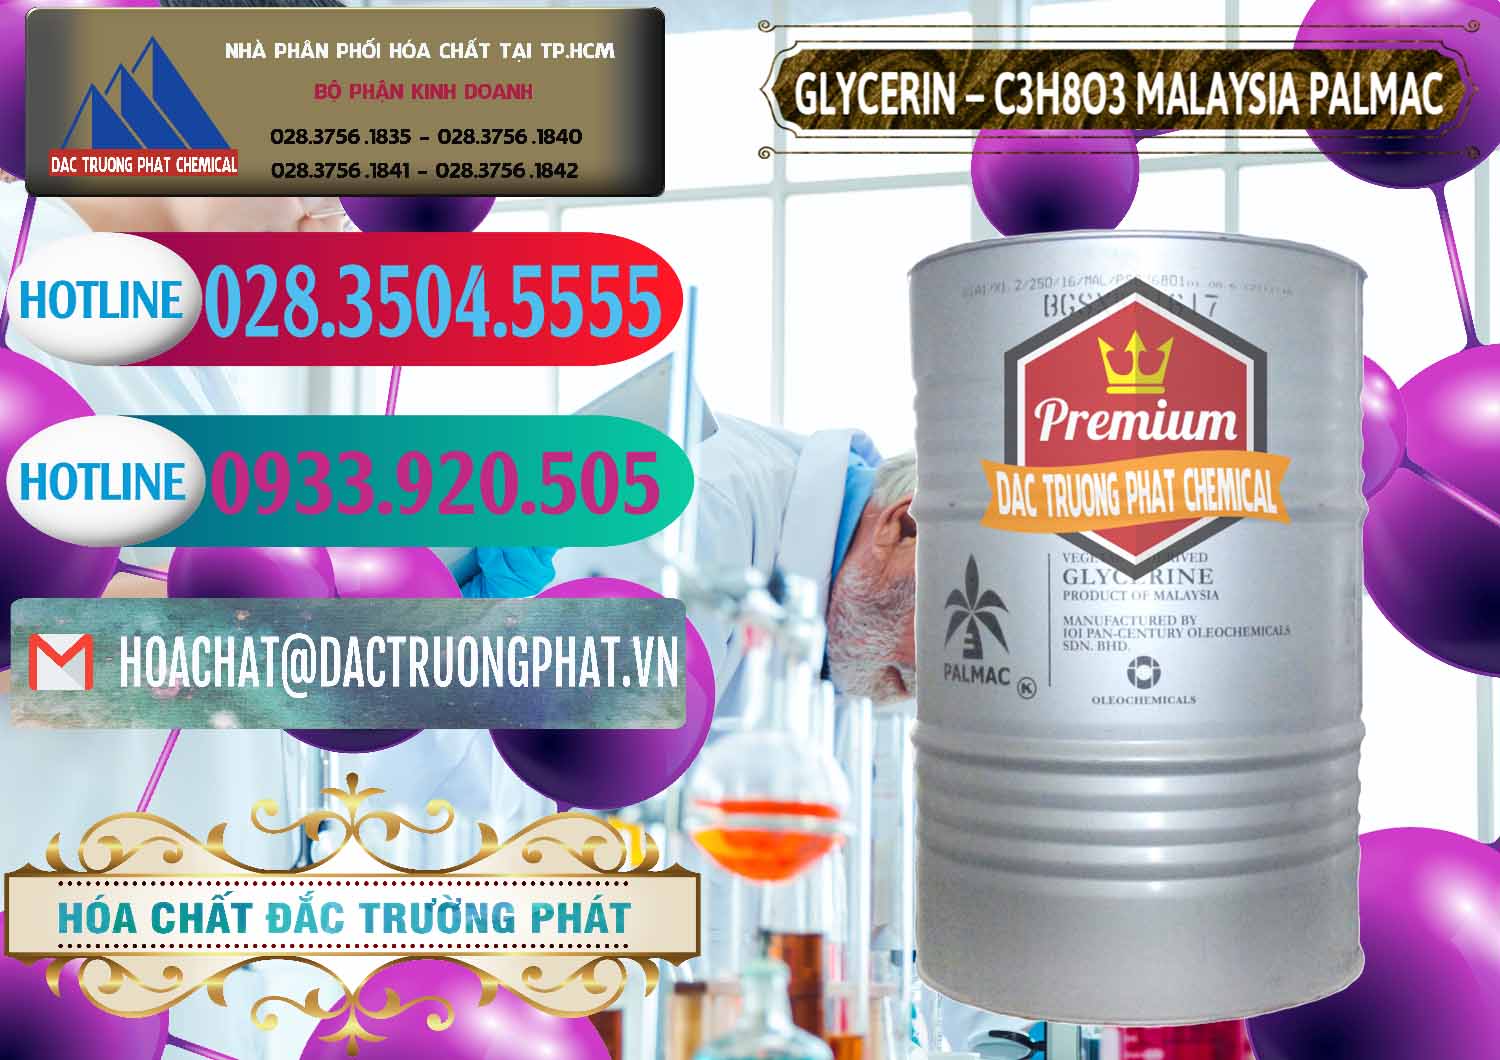 Công ty chuyên cung ứng & bán Glycerin – C3H8O3 99.7% Malaysia Palmac - 0067 - Nơi chuyên phân phối và kinh doanh hóa chất tại TP.HCM - truongphat.vn